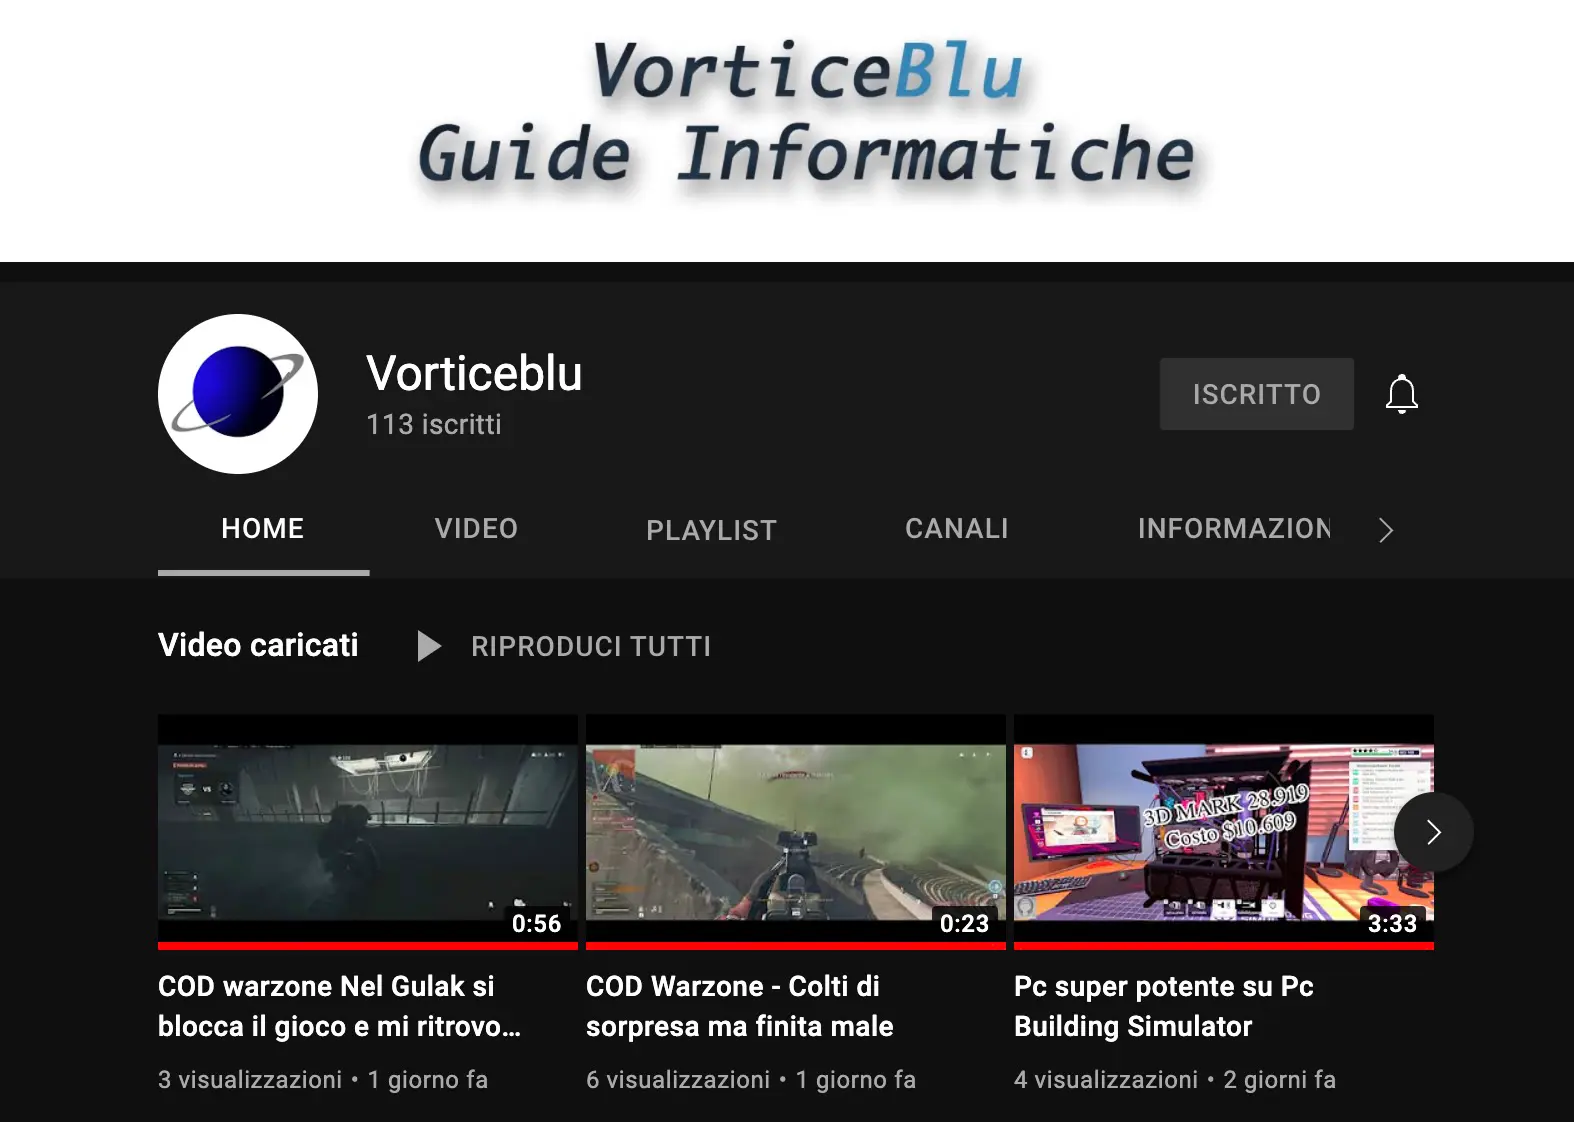 Nuovo account Youtube di VorticeBlu. Iscrivetevi!